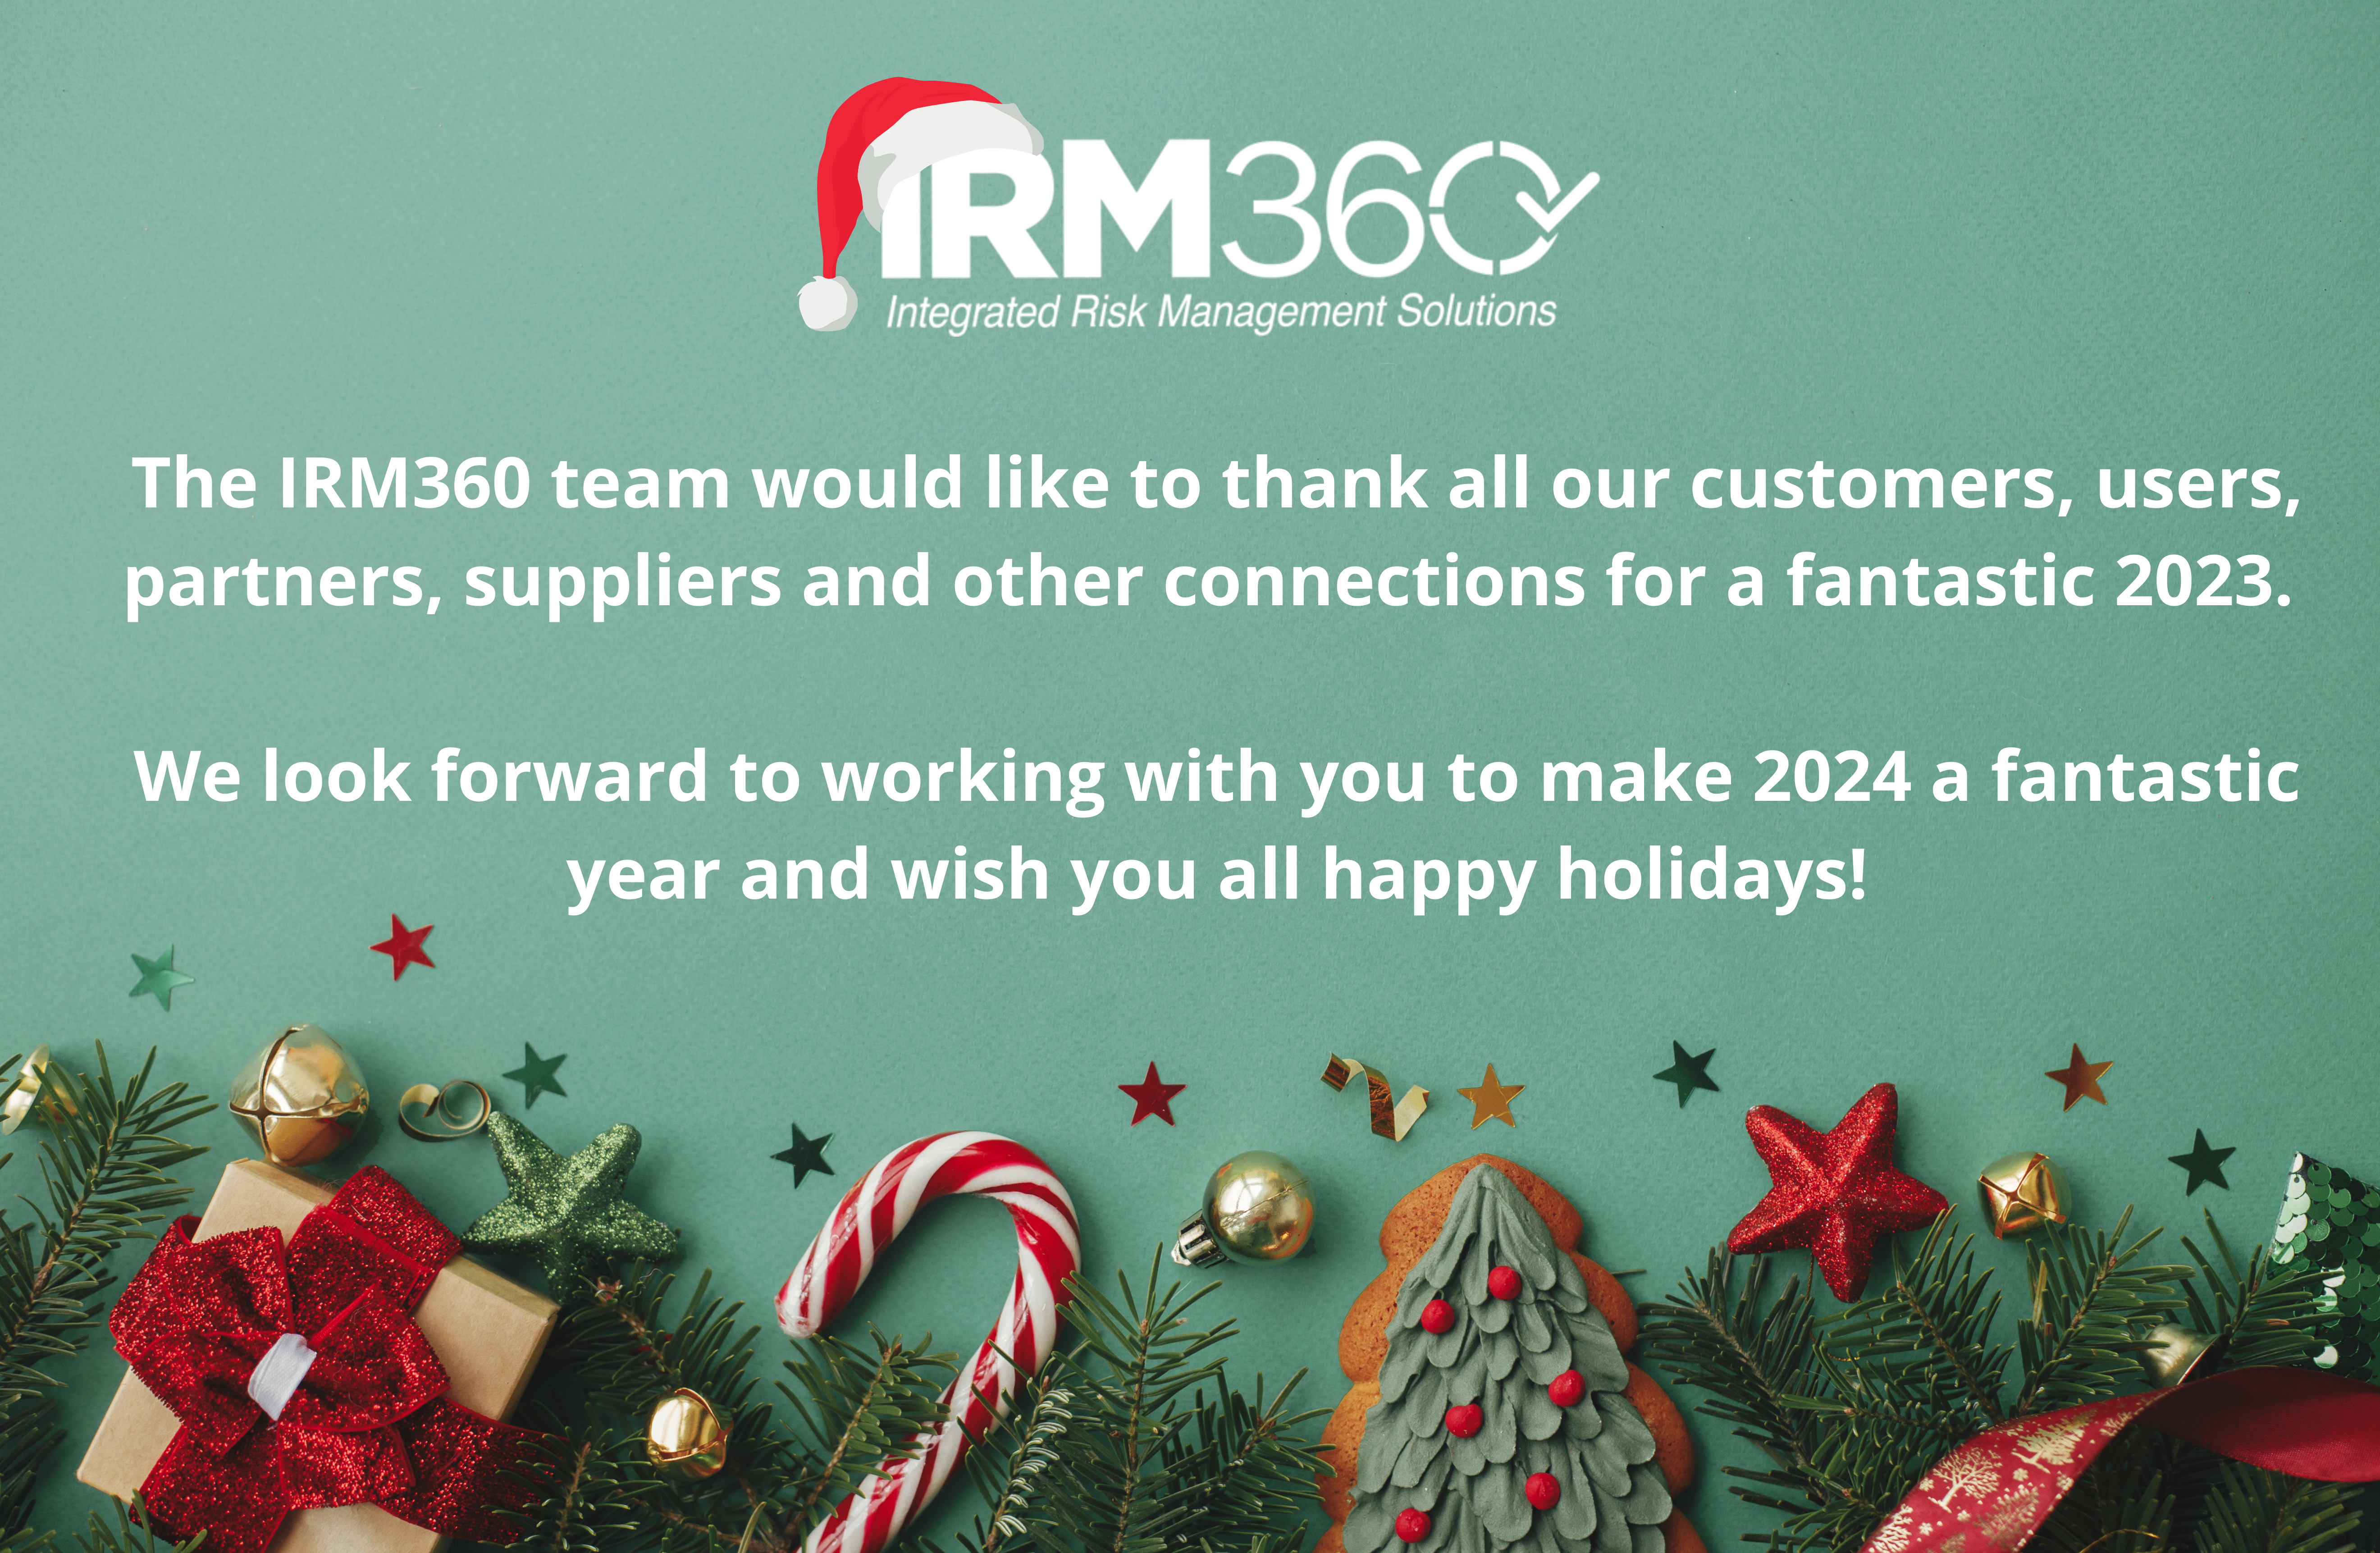 IRM360 herkese Mutlu Noeller ve Mutlu Yıllar diler!